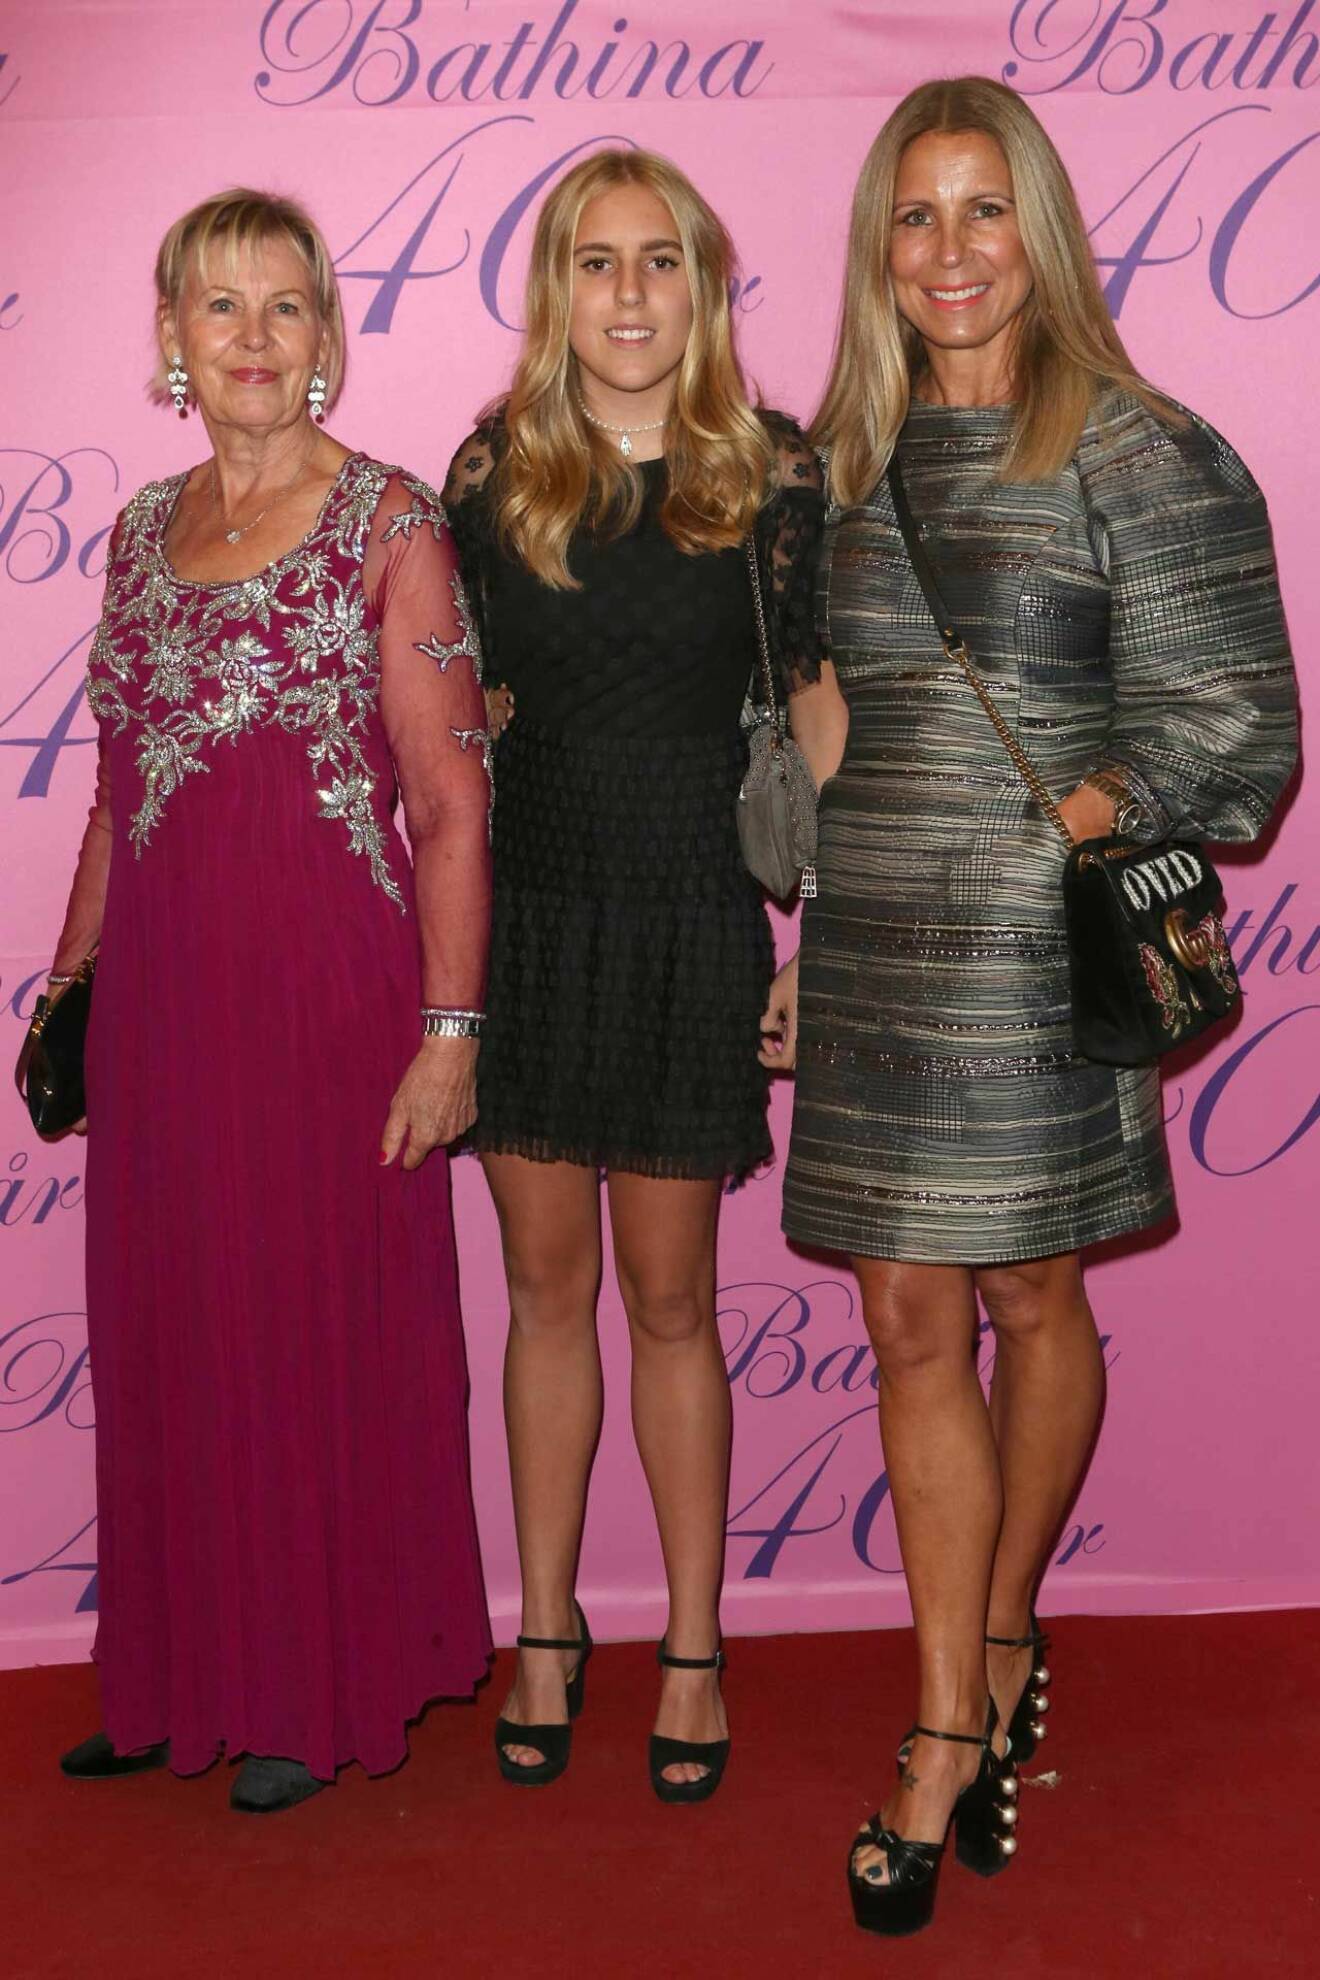 Ajes dotter Nina Philipson (th) med dotter Mini och väninnan Birgitta Cronlund.